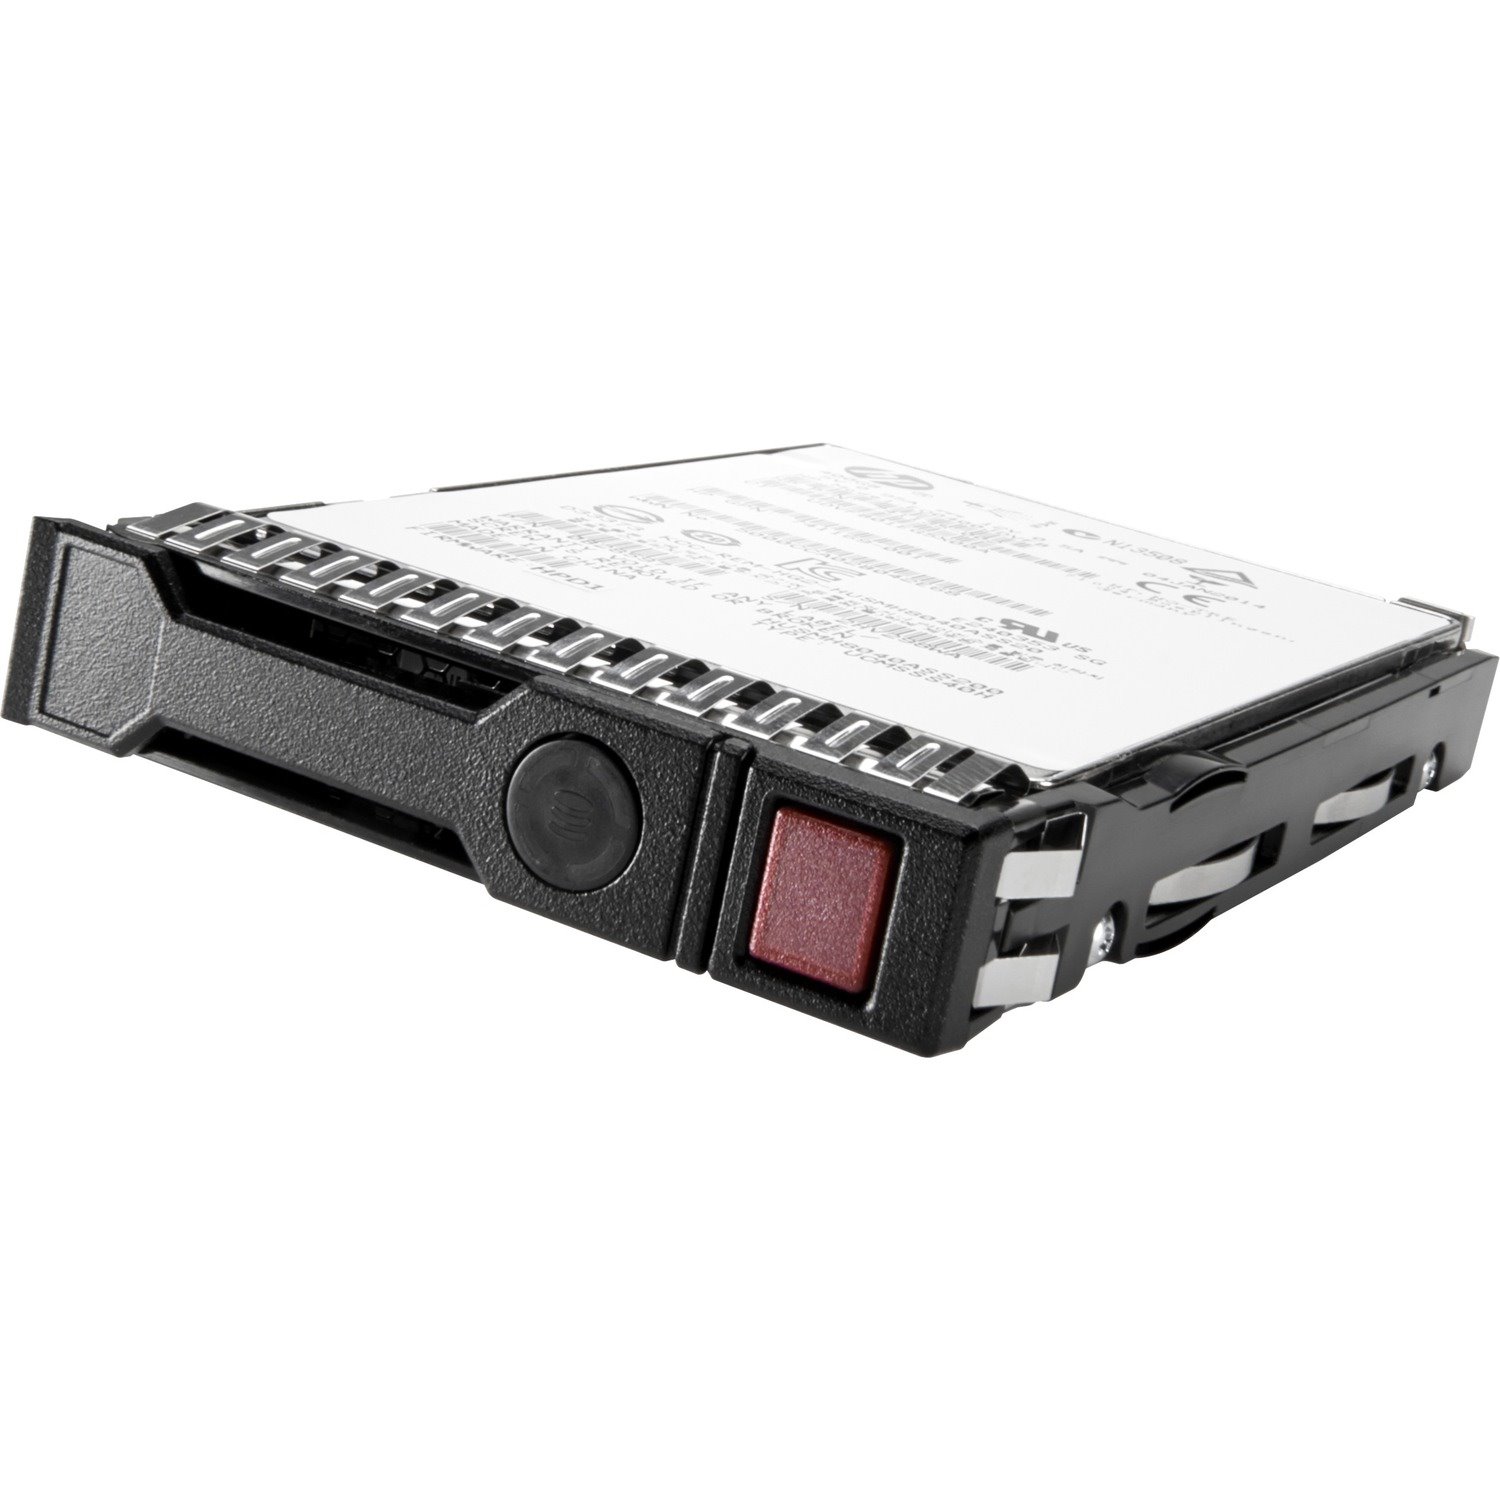 HPE 8 TB Hard Drive - 3.5" Internal - SATA (SATA/600)